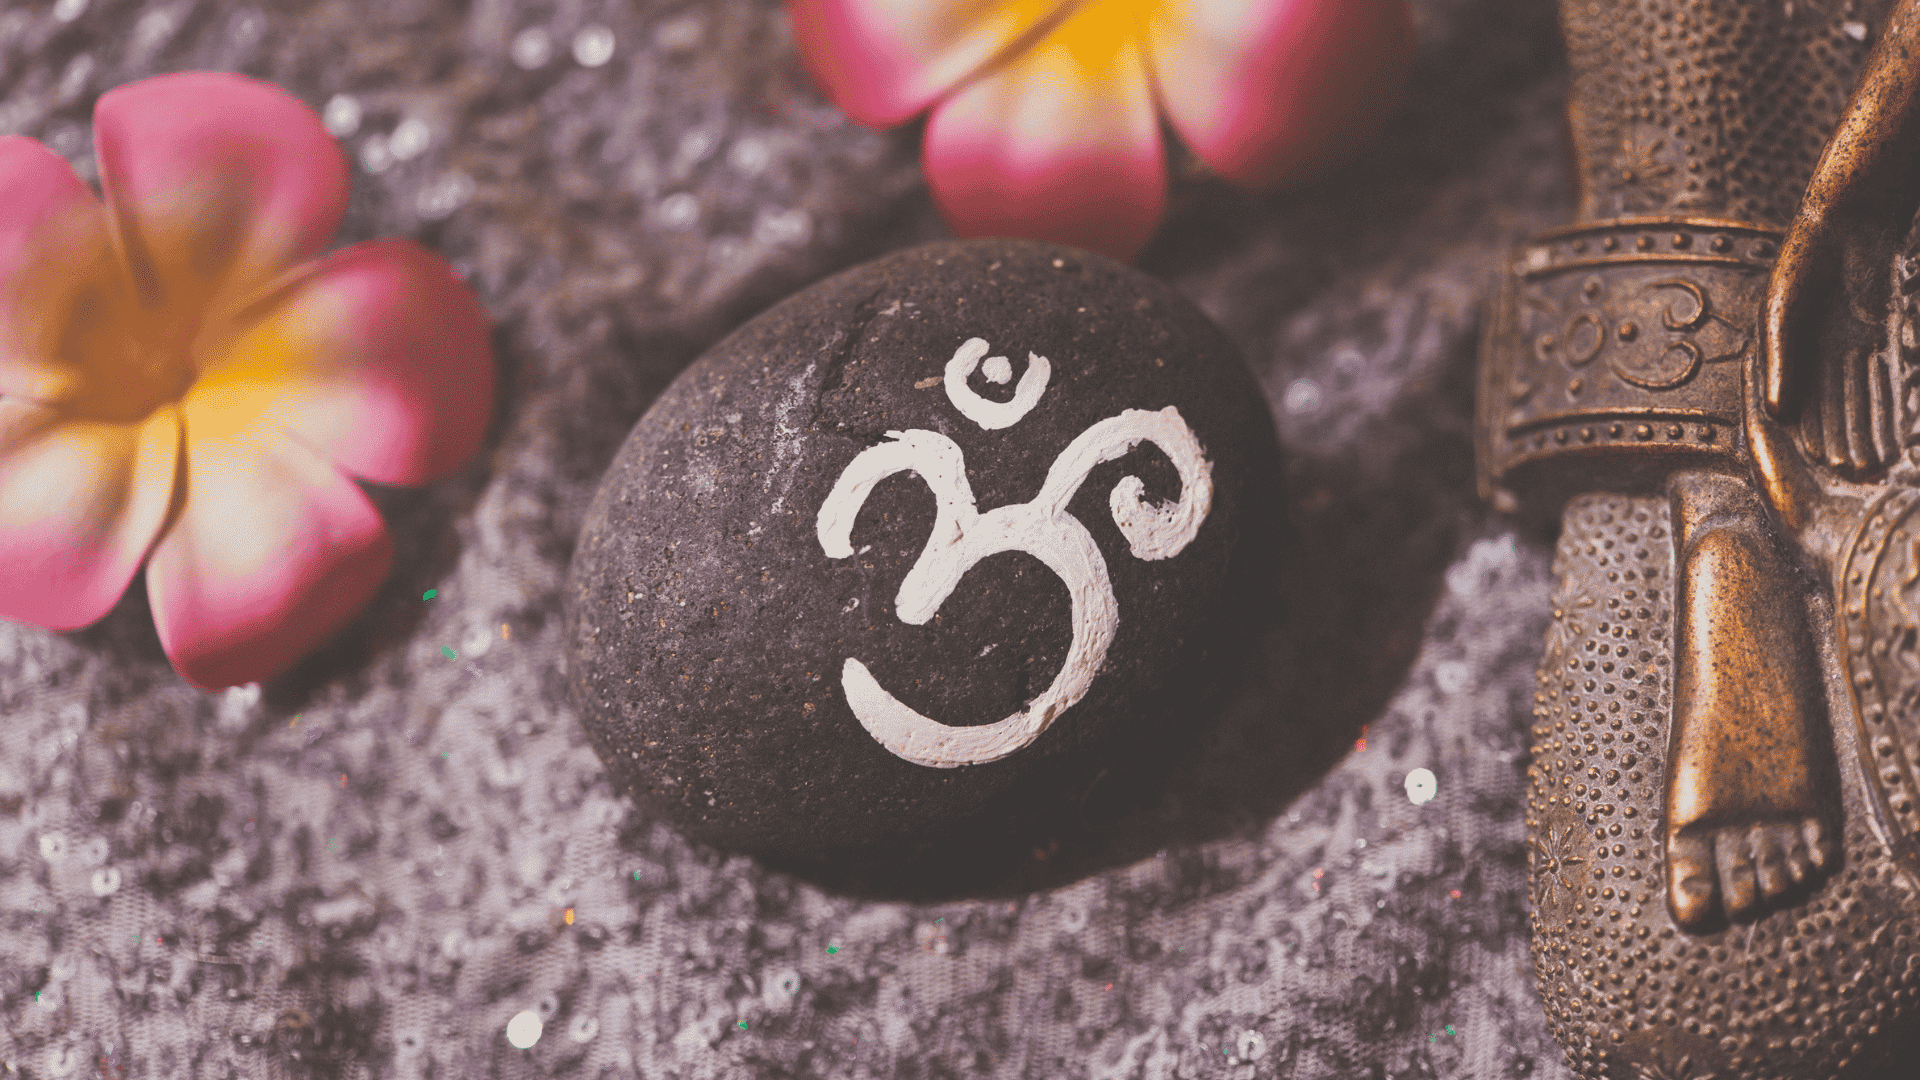  9 نماد معنوی که باید بدانید، معنی و نحوه استفاده از هر کدام